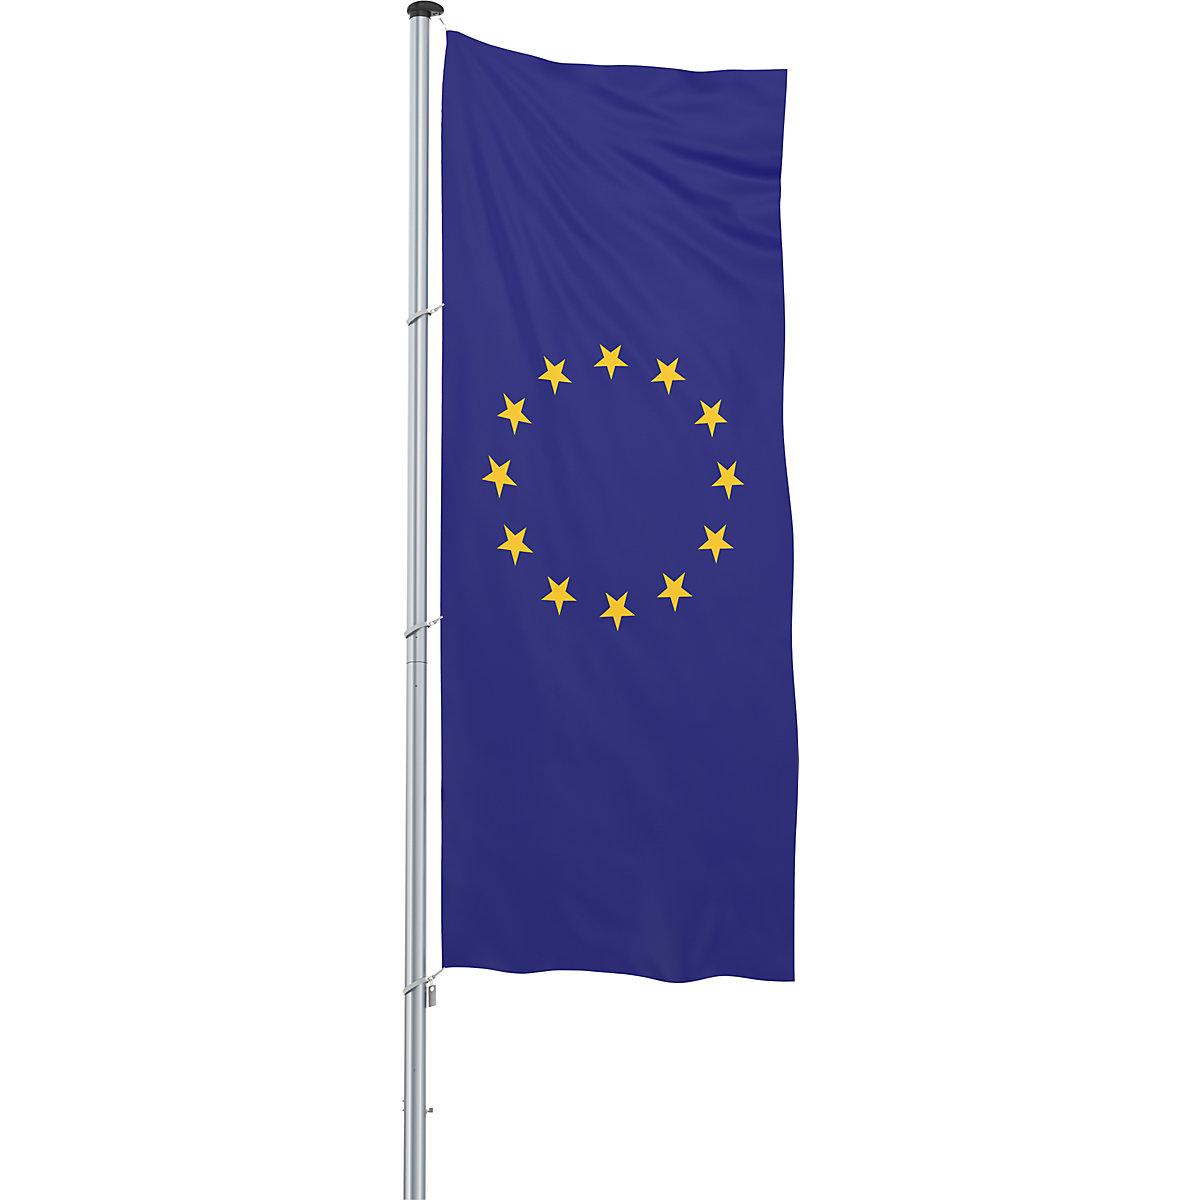 Mannus – Bandera para izar/bandera del país, formato 1,2 x 3 m, bandera de Europa